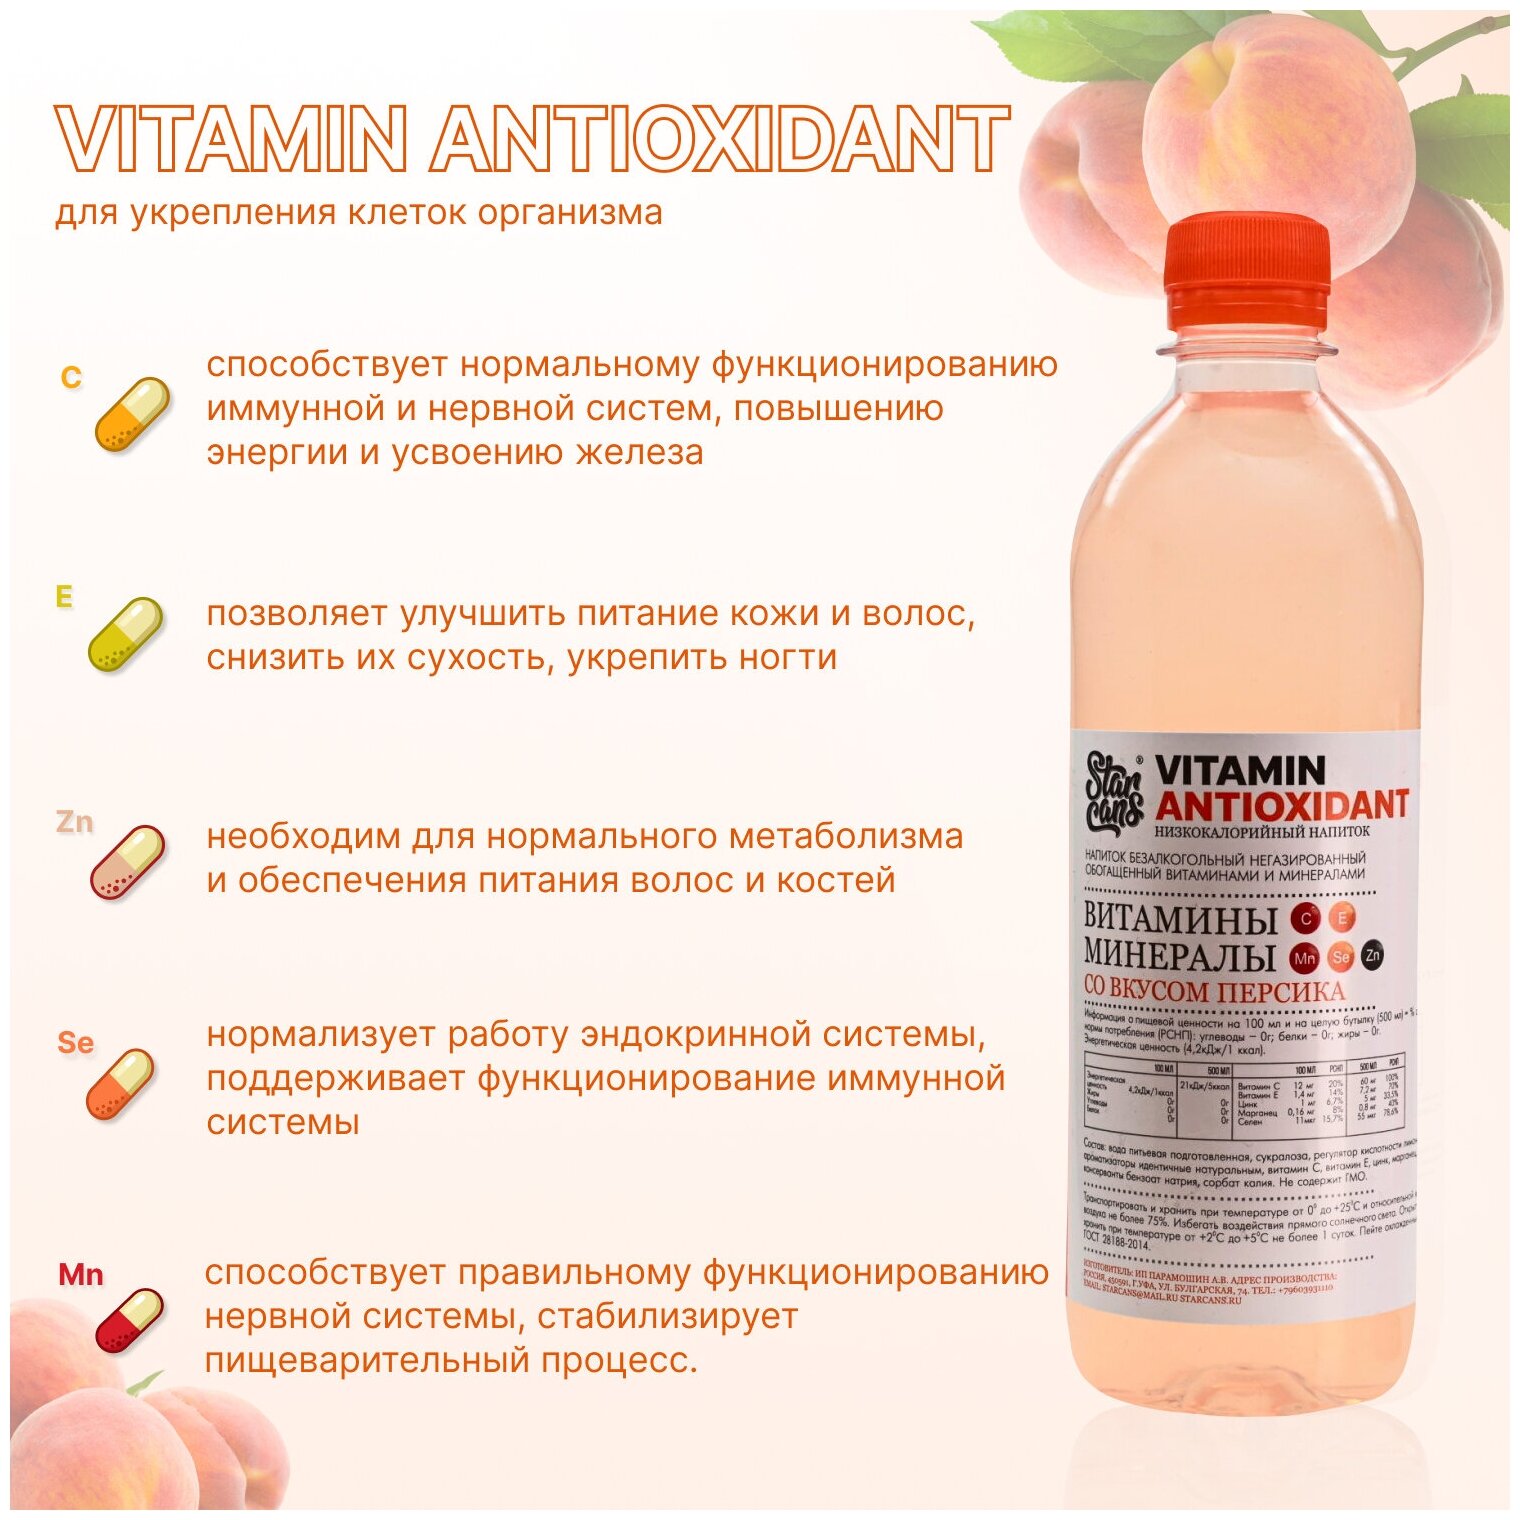 Vitamin ANTIOXIDANT Напиток витаминизированный со вкусом Персика негазированный низкокалорийный 500мл - фотография № 2